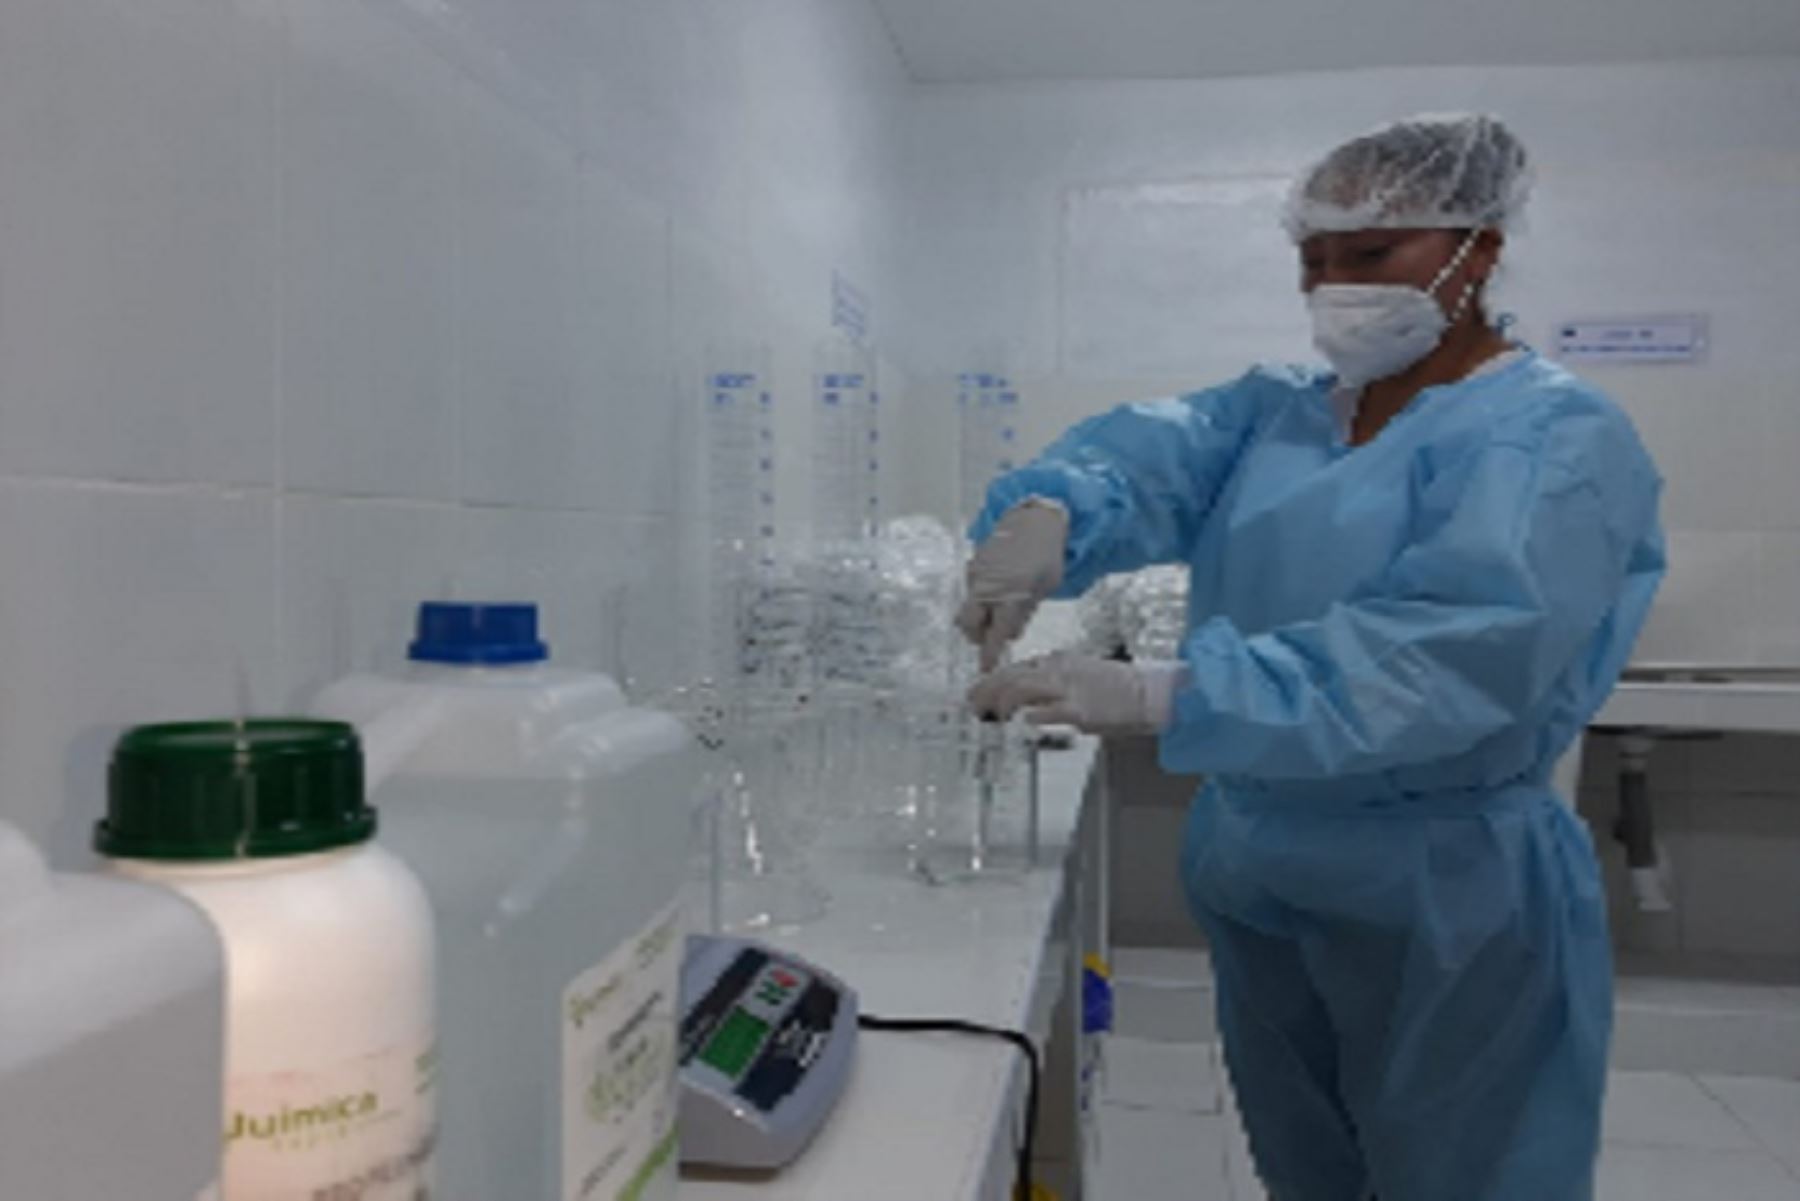 Este es el tercer laboratorio que pone en marcha el Gobierno Regional de Áncash para la elaboración de ivermectina. Los dos anteriores fueron inaugurados en Huaraz y en Casma.